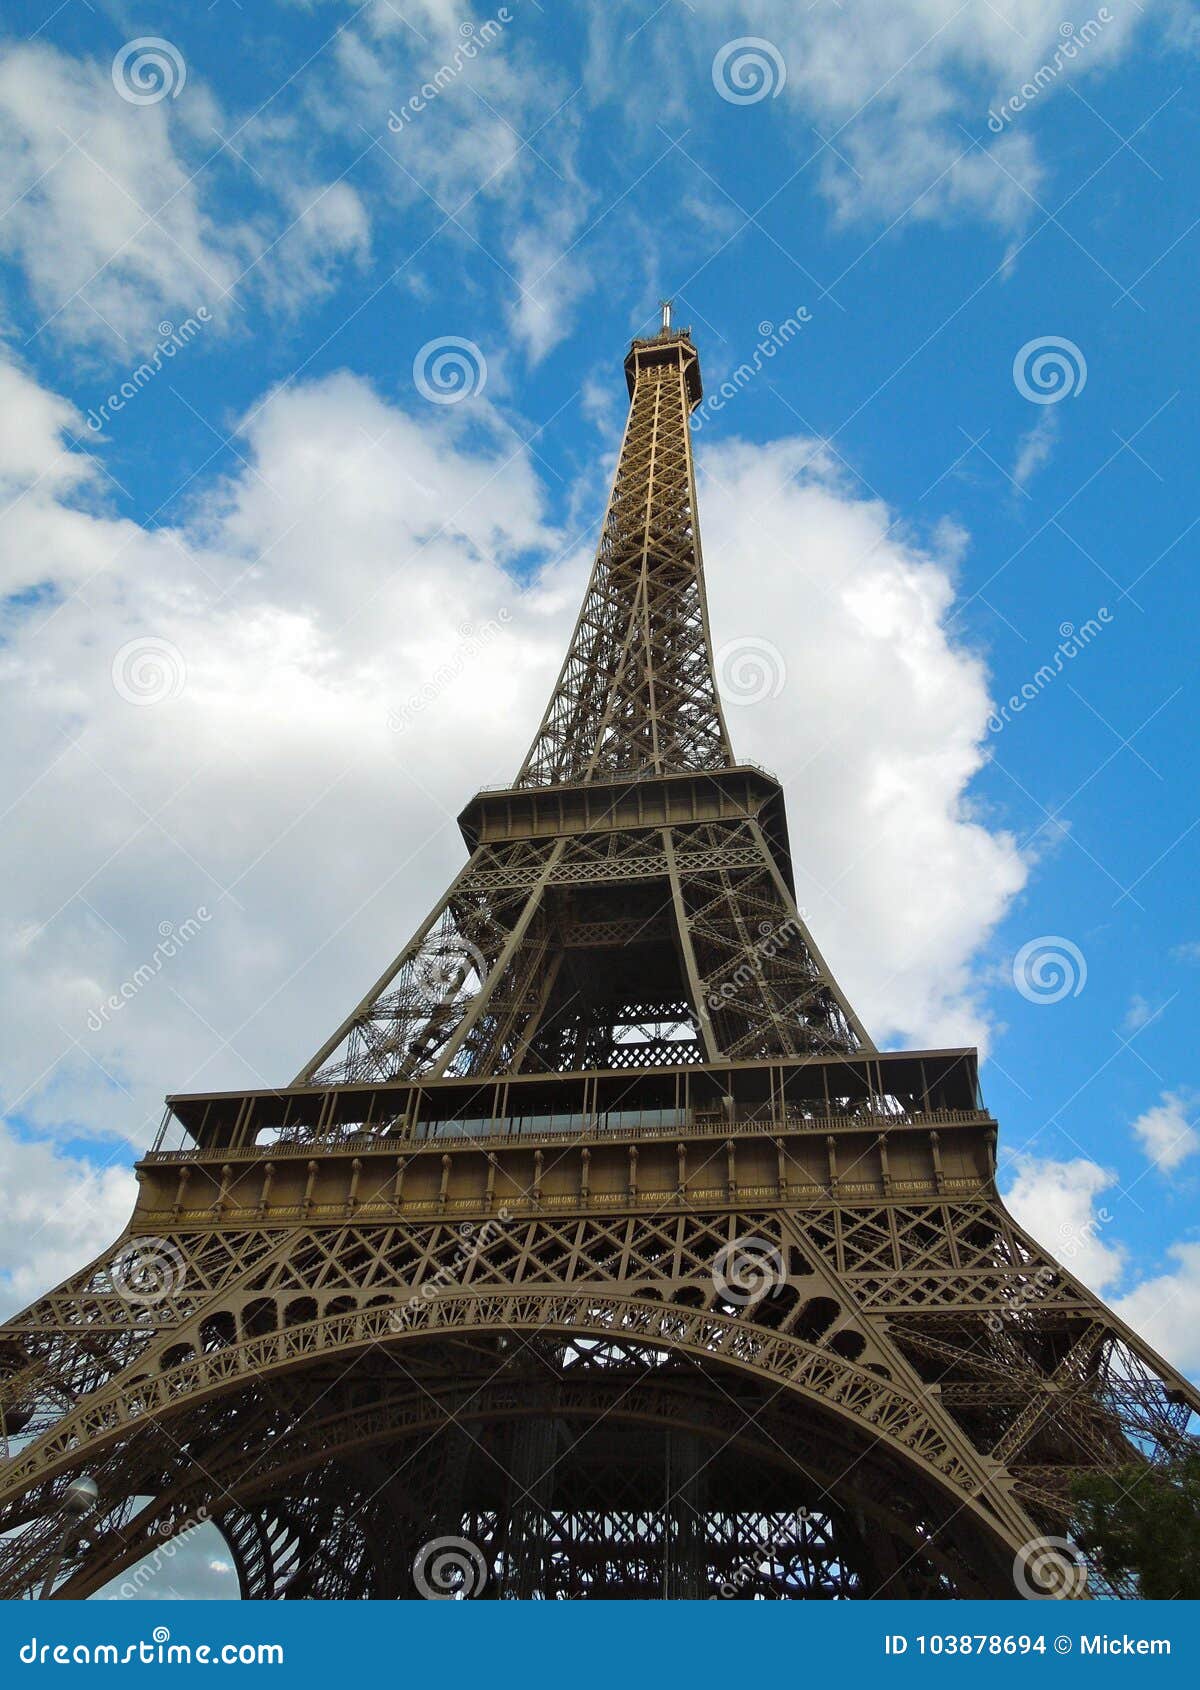 Featured image of post Torre Eiffel Foto Vertical : Baixe estas foto premium sobre torre eiffel, céu azul claro, vertical, e descubra mais de 6 milhão de fotos de arquivo profissionais no freepik.